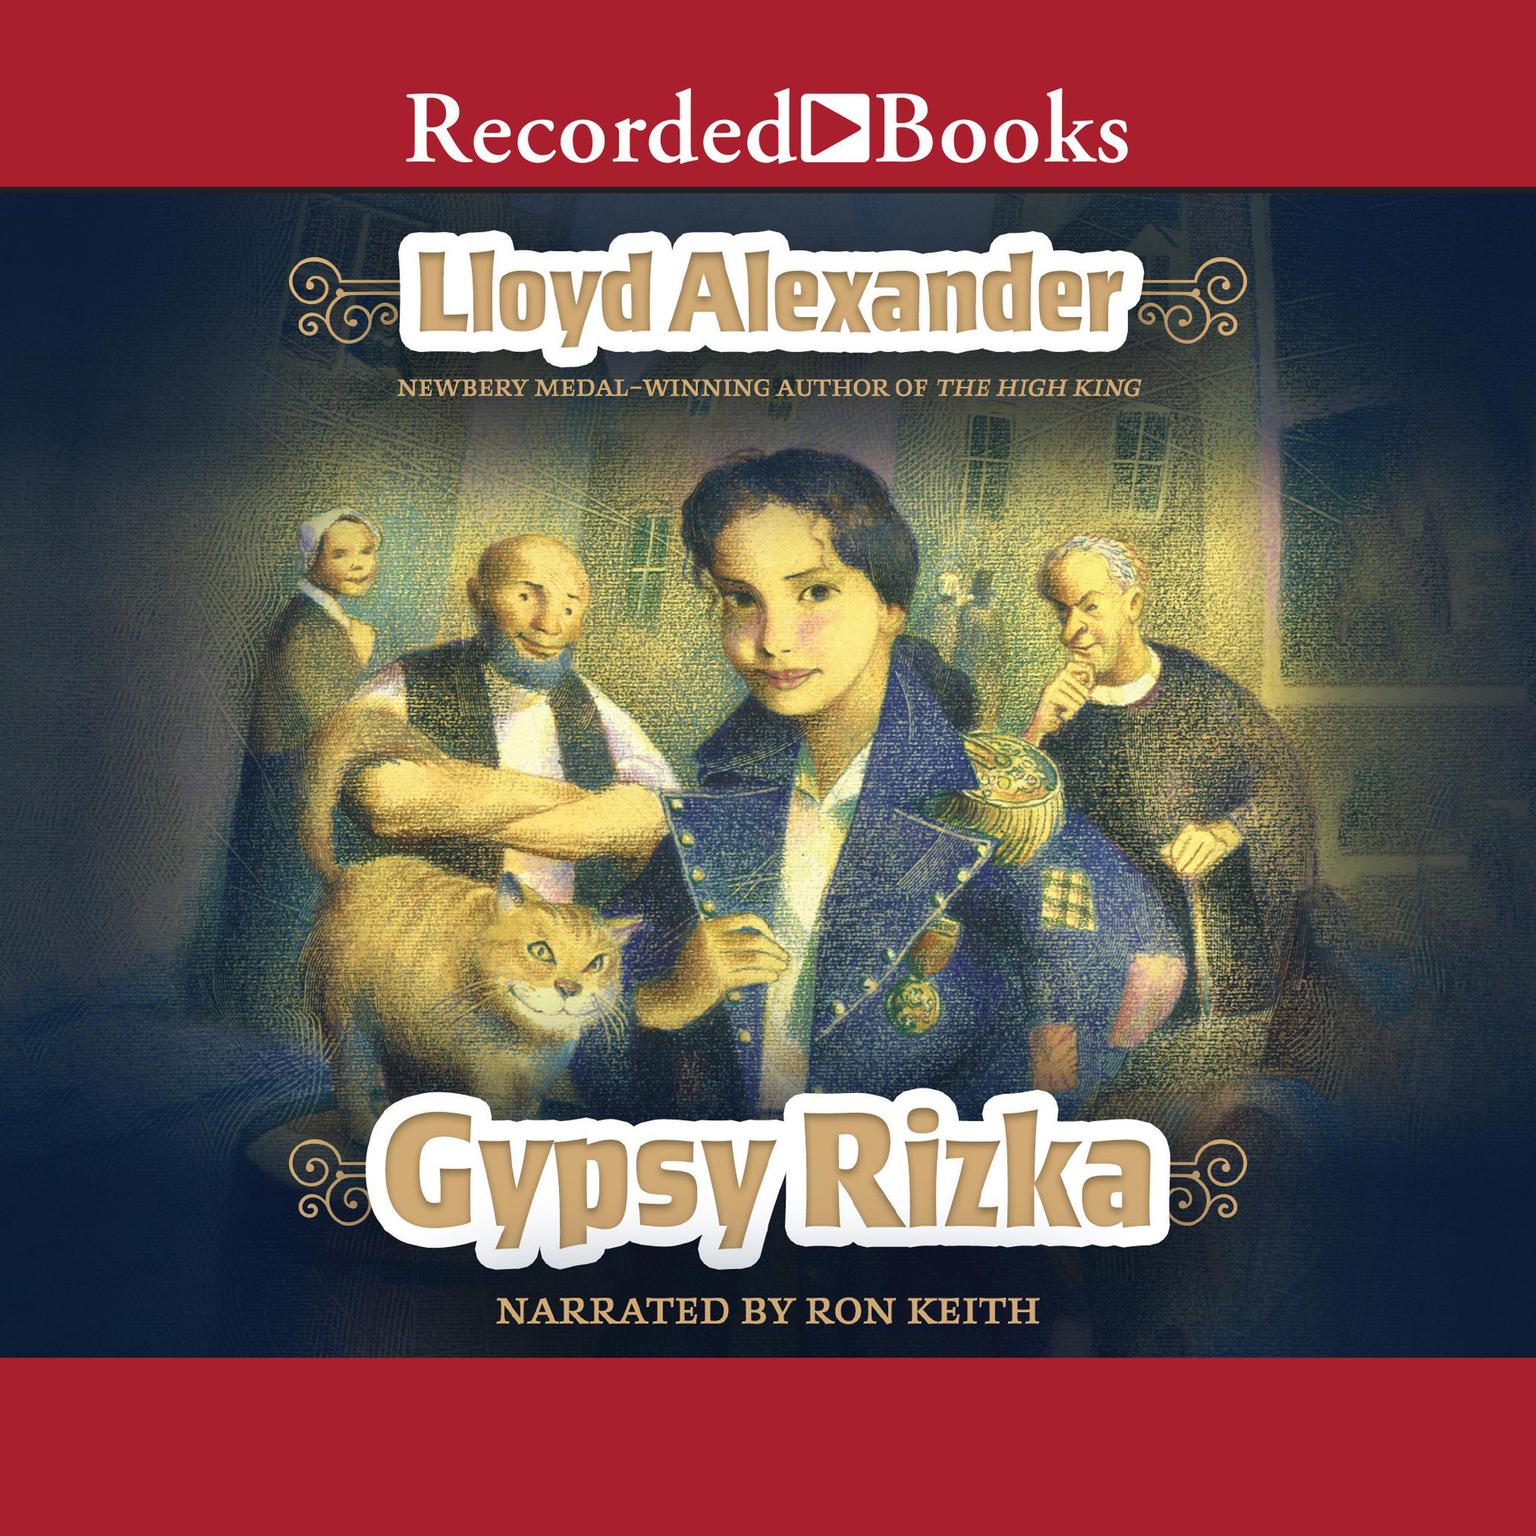 Gypsy Rizka Audiobook, by Lloyd Alexander